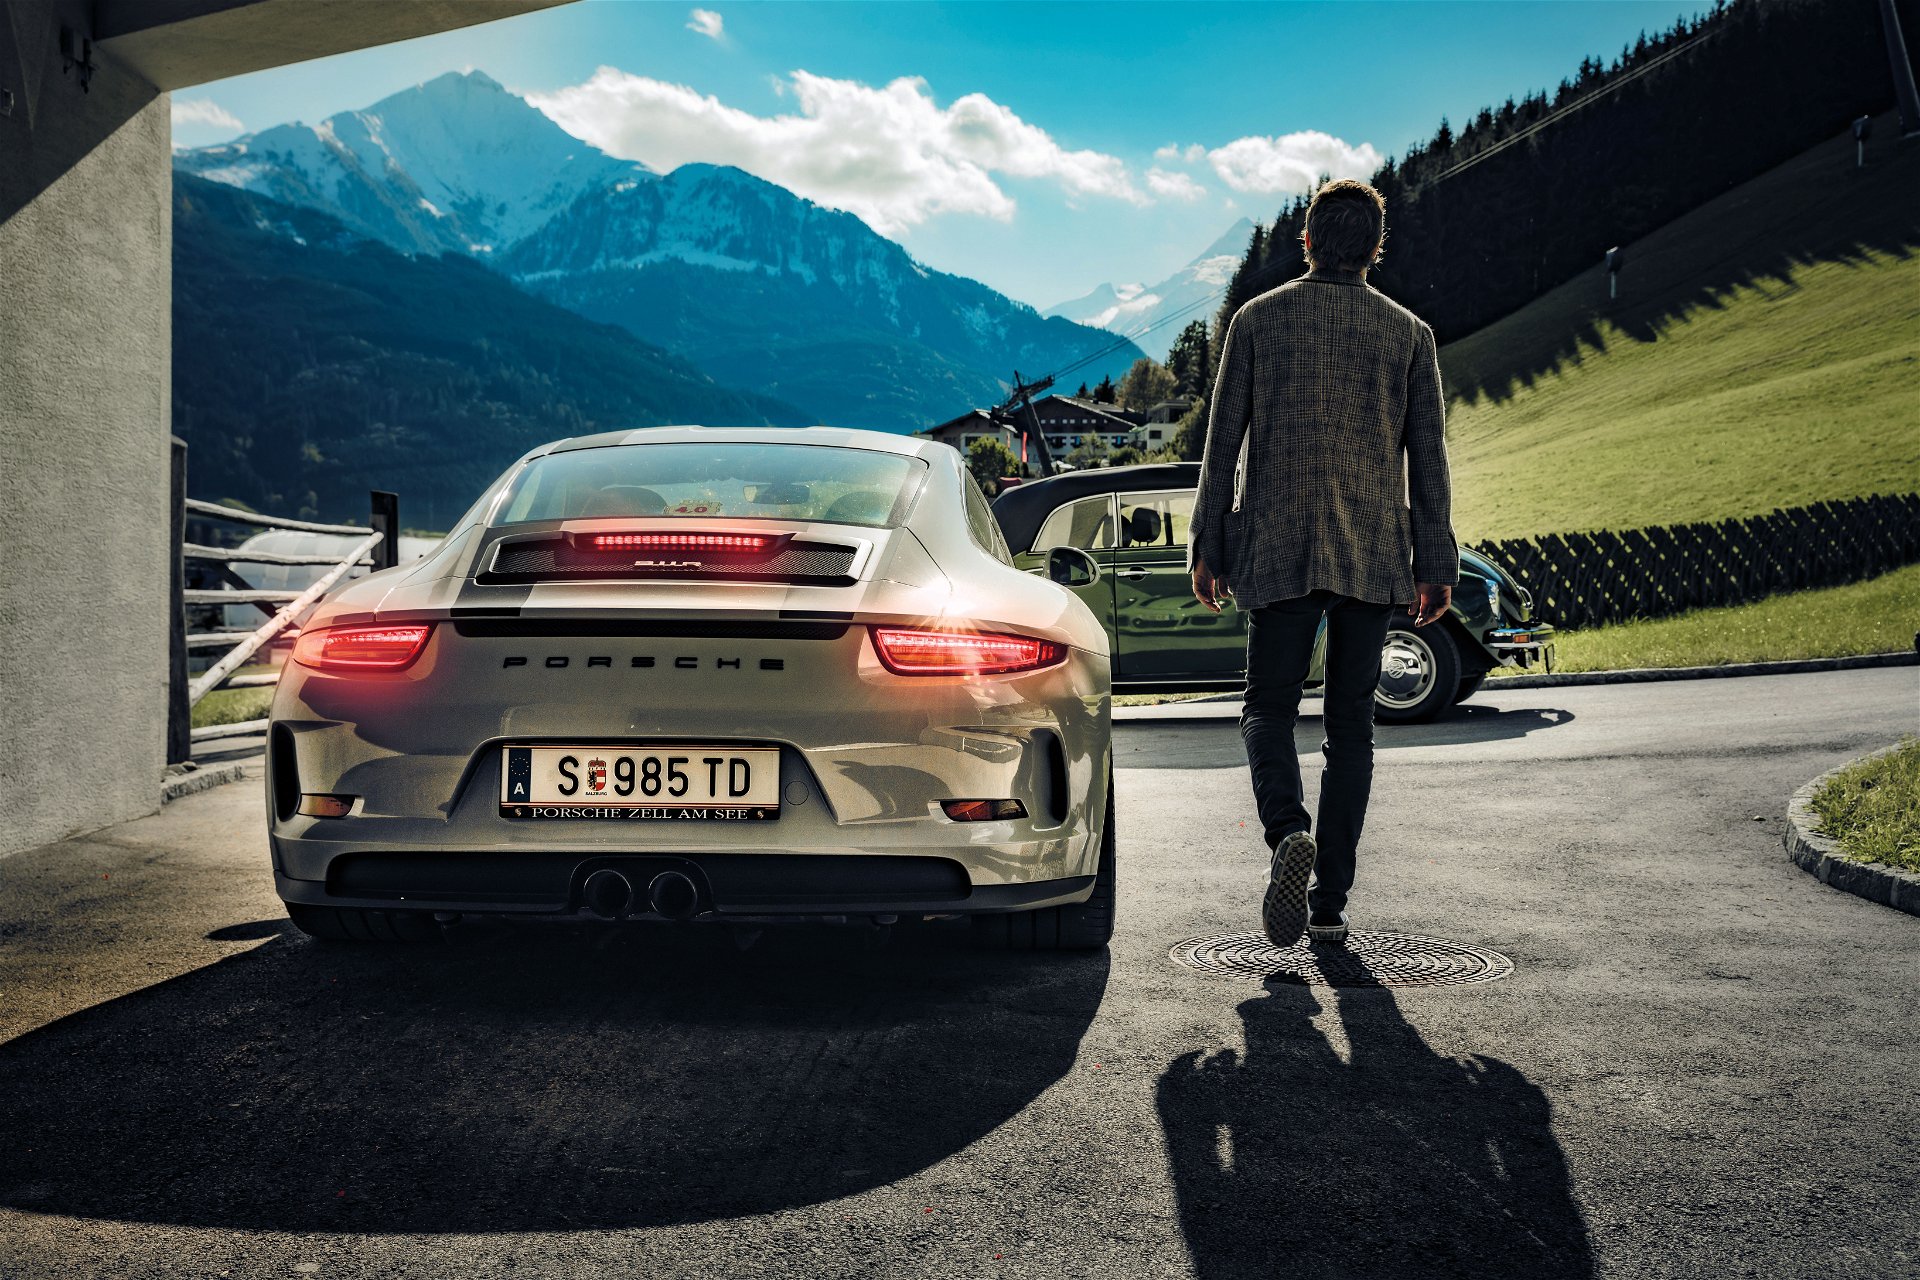 Einer für alles: Ein Alltagsauto muss vorläufig reichen. Aber Ferdinand Porsche hat ja das Glück, dass sein Vater ein paar schöne Autos besitzt, die er sich hin und wieder ausleihen darf.